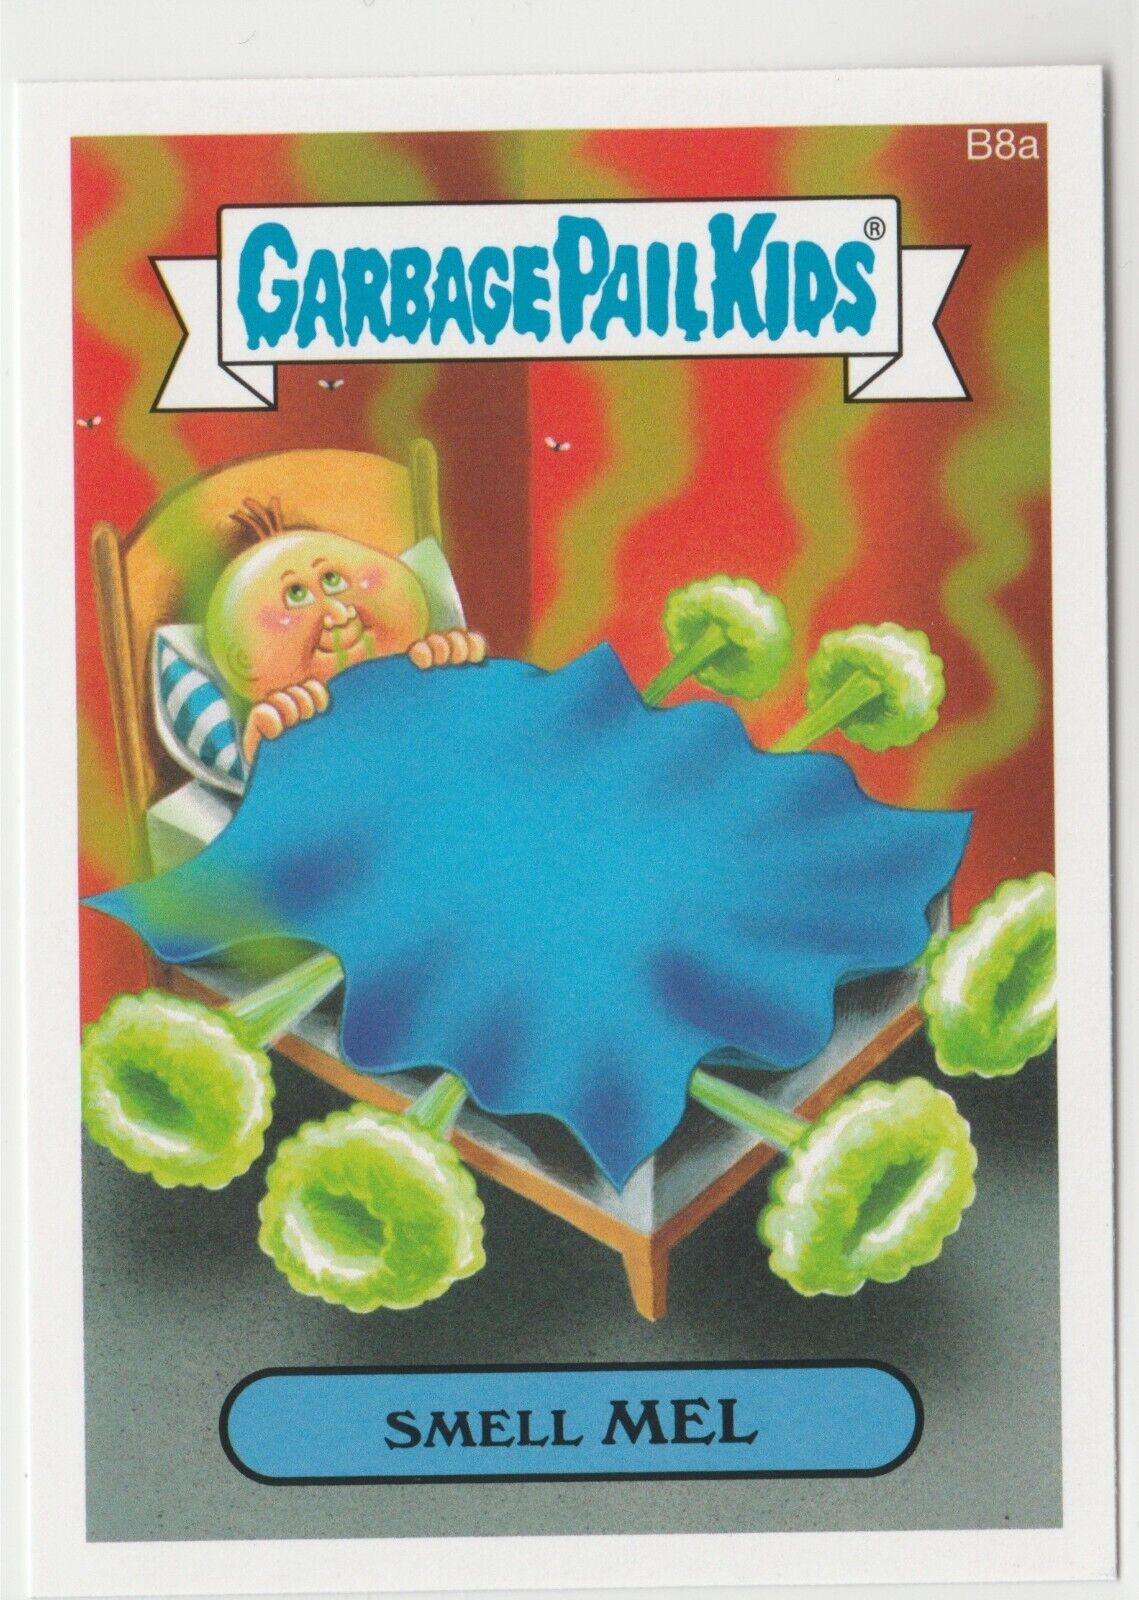 2015 Topps Garbage Pail Kids Series 1 Smell Mel B8a BONUS STICKER GPK 3490